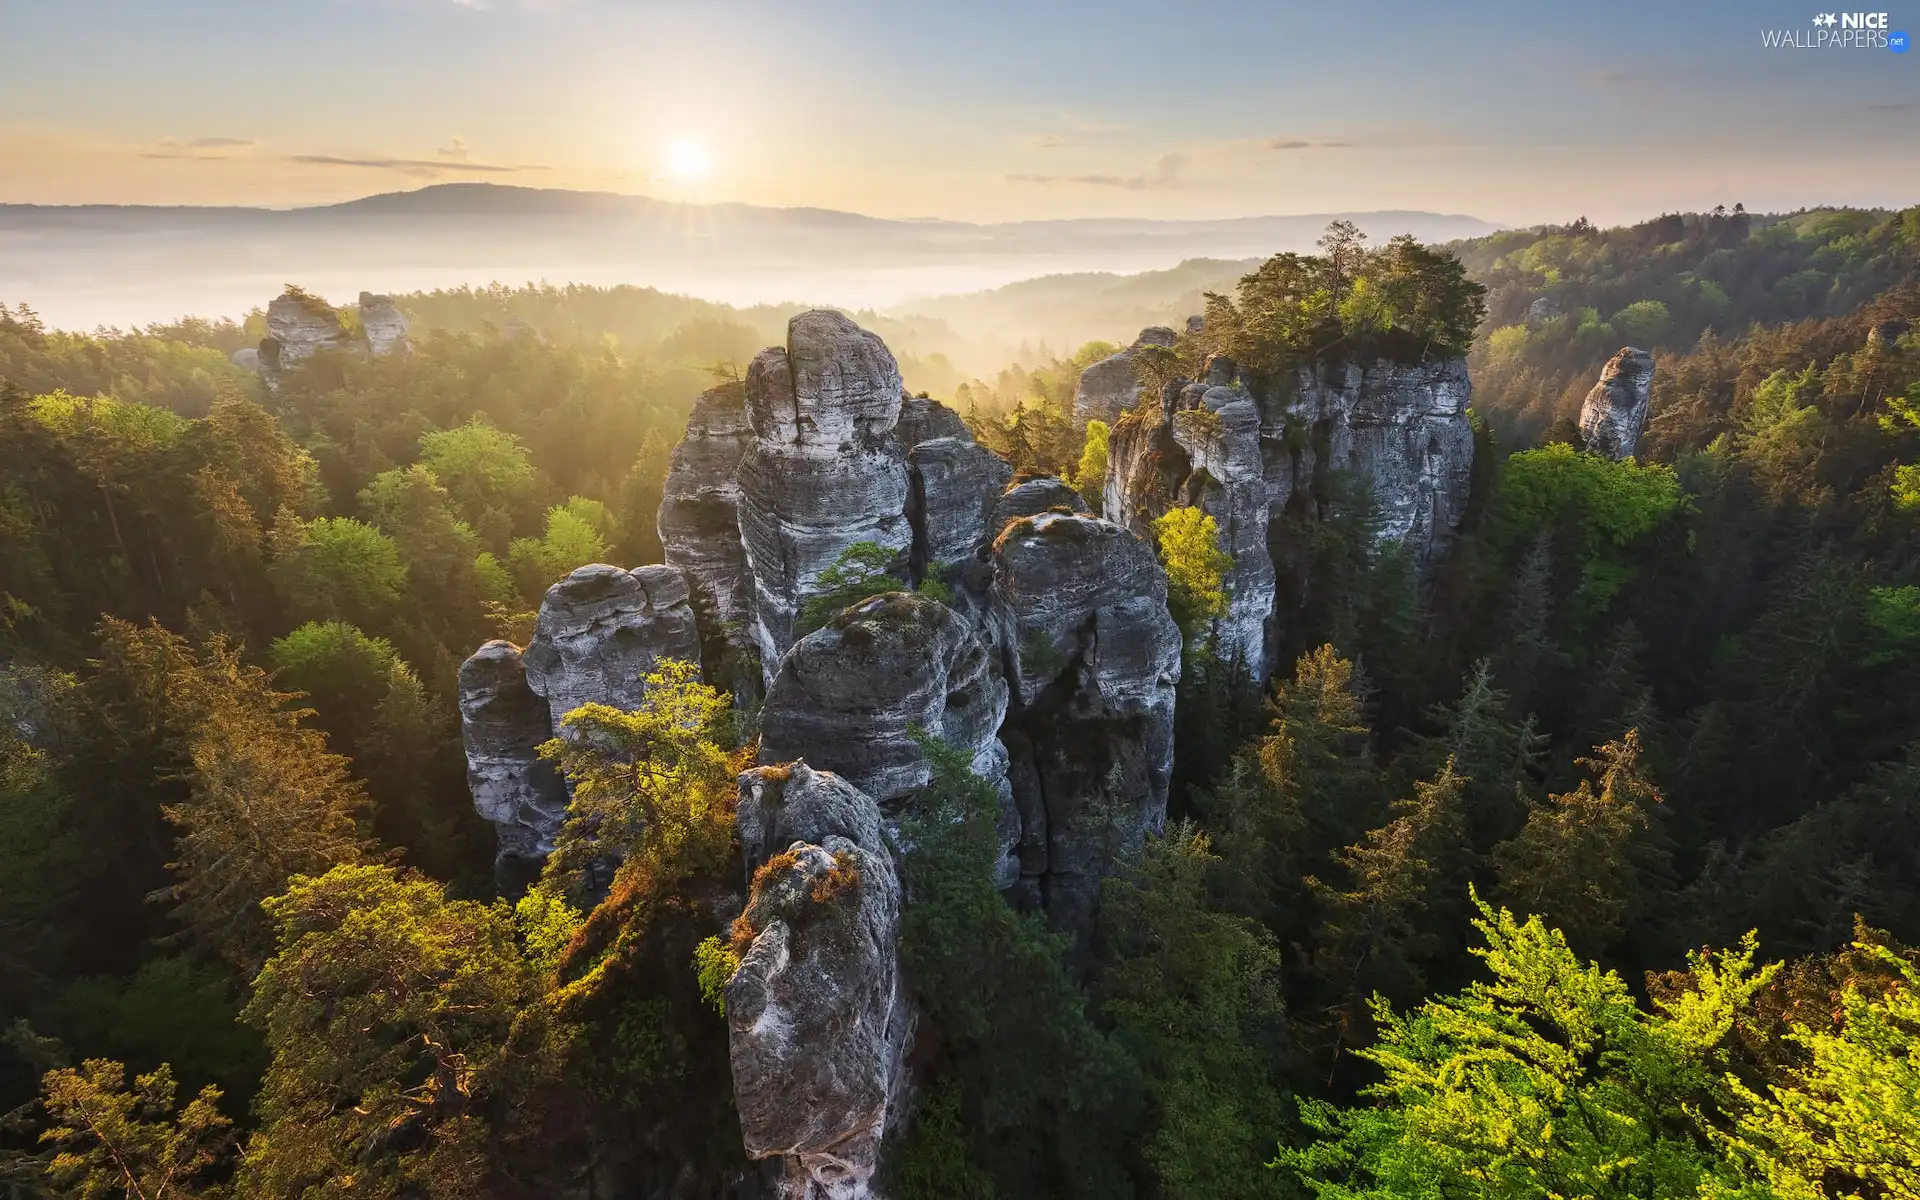 Děčínská vrchovina, Germany, Sunrise, woods, viewes, rocks, Saxon Switzerland National Park, trees